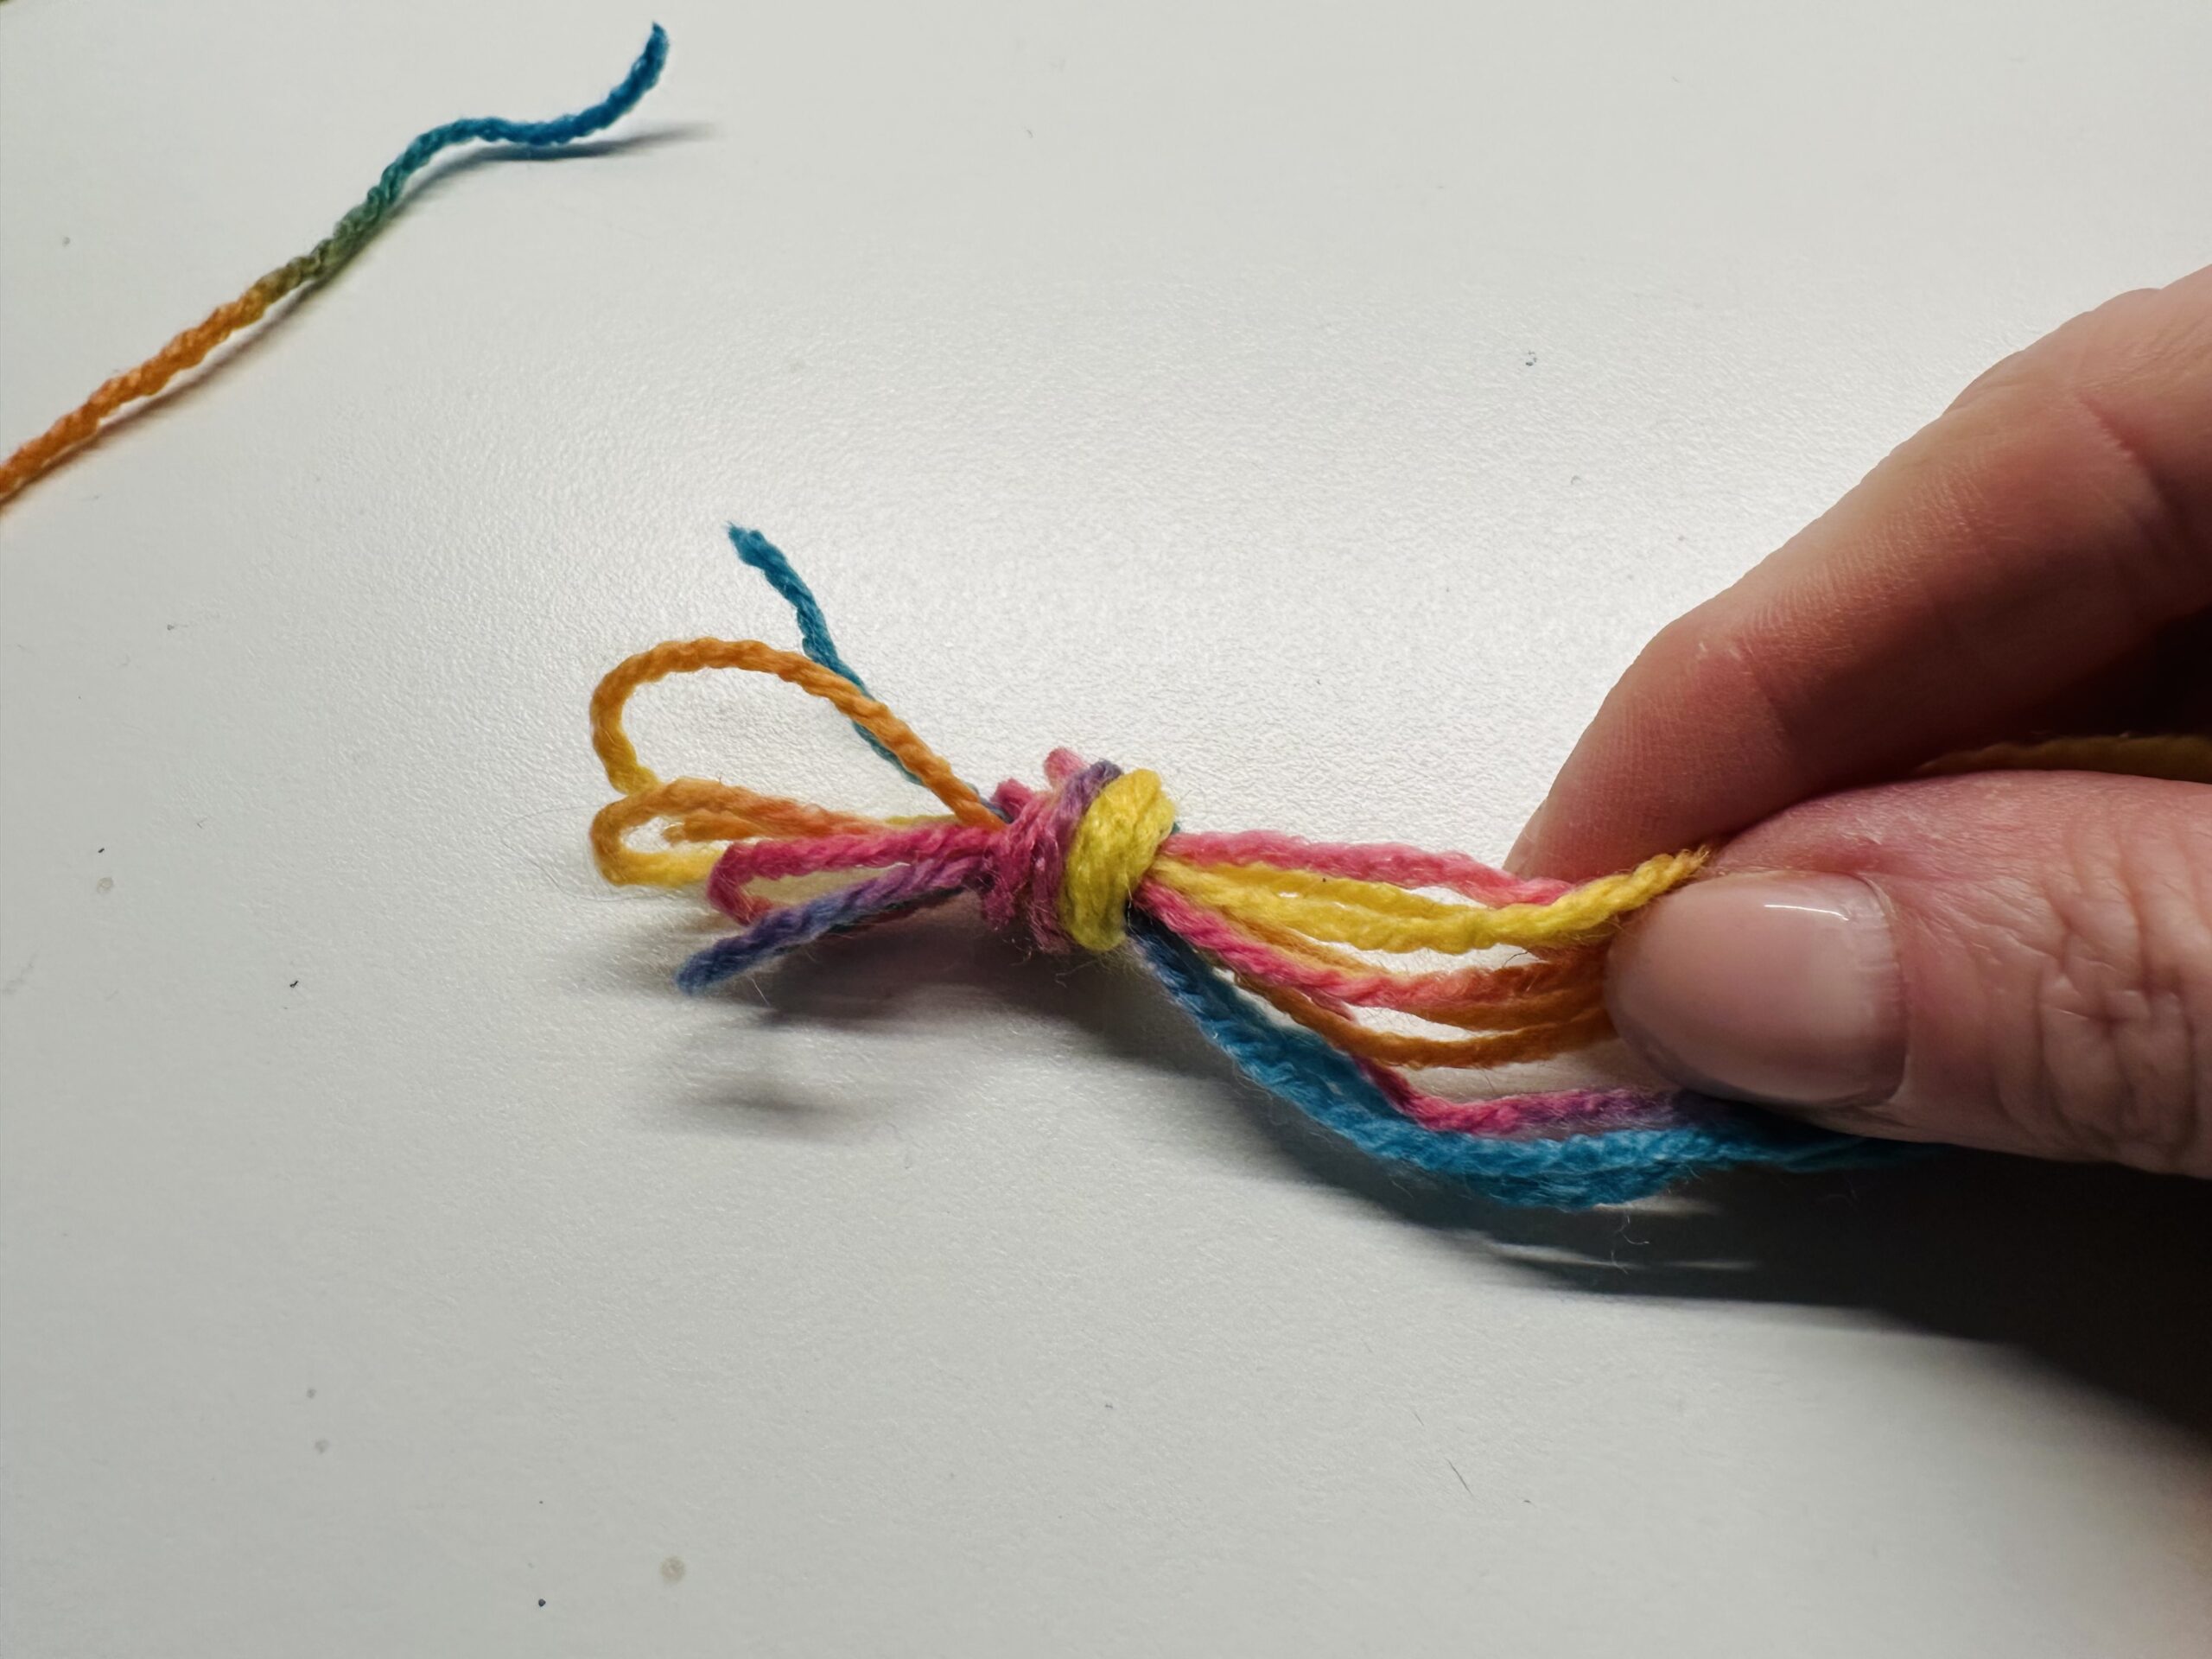 Bild zum Schritt 5 für das Bastel- und DIY-Abenteuer für Kinder: 'Macht einen Knoten am Ende aller Fäden.'